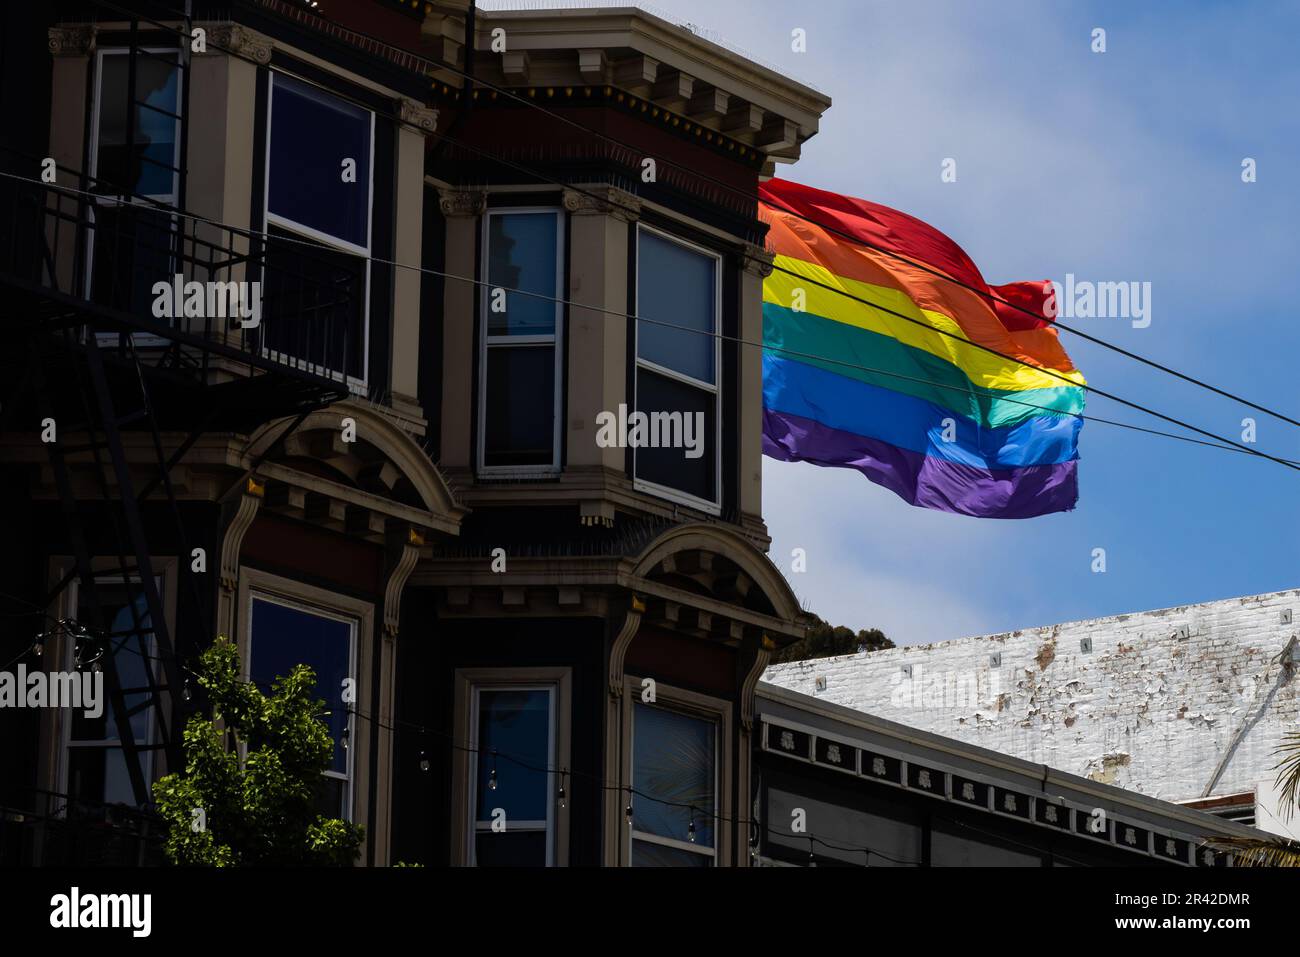 Ce superbe bâtiment multicolore se dresse fièrement dans la zone urbaine, avec son drapeau arc-en-ciel survolant un ciel bleu vif. Le quartier Castro, Banque D'Images